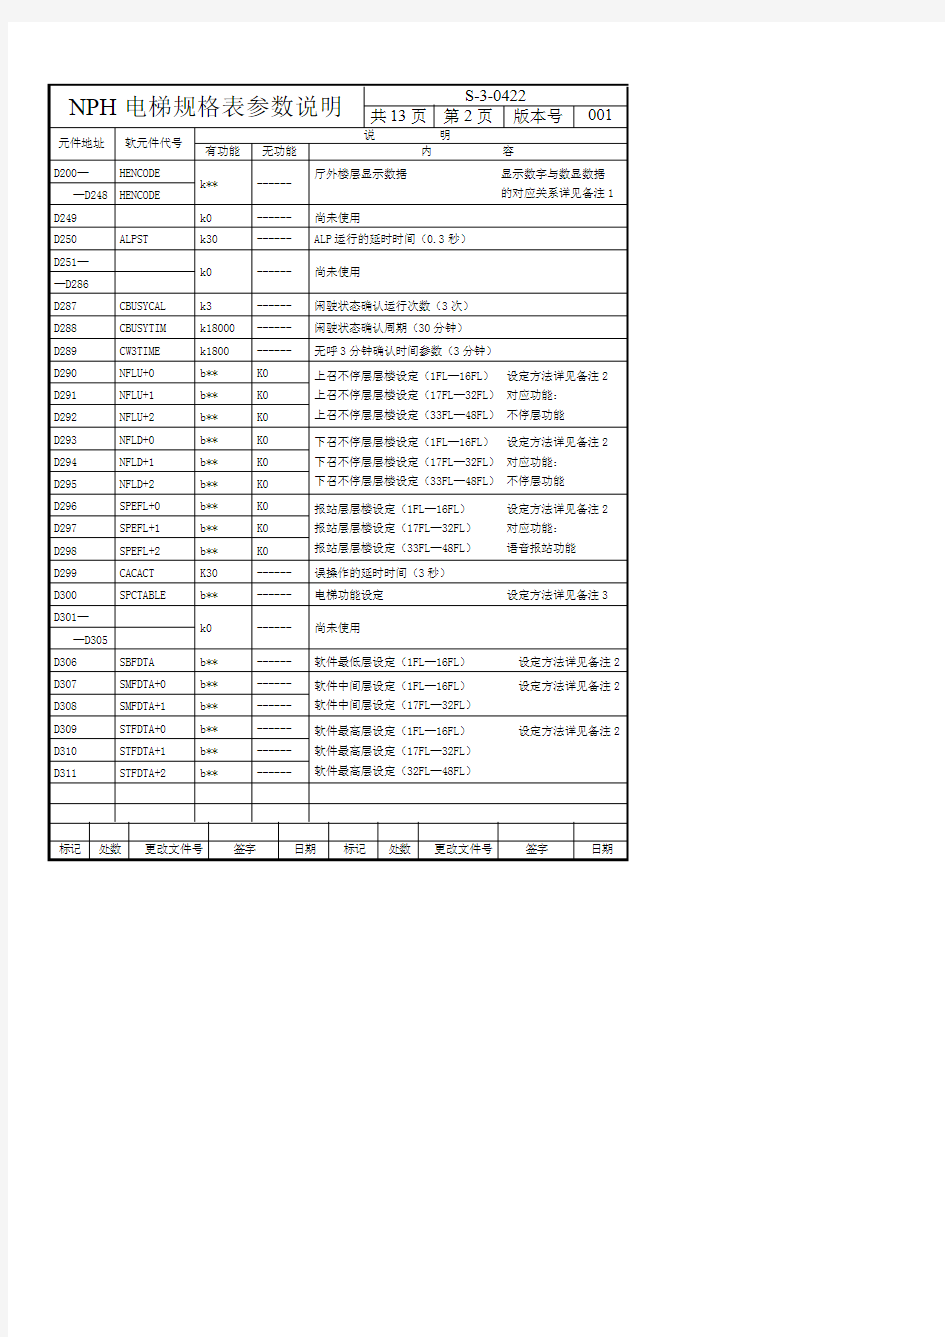 设计文件S-3-0422NPH电梯规格表参数说明 (1)